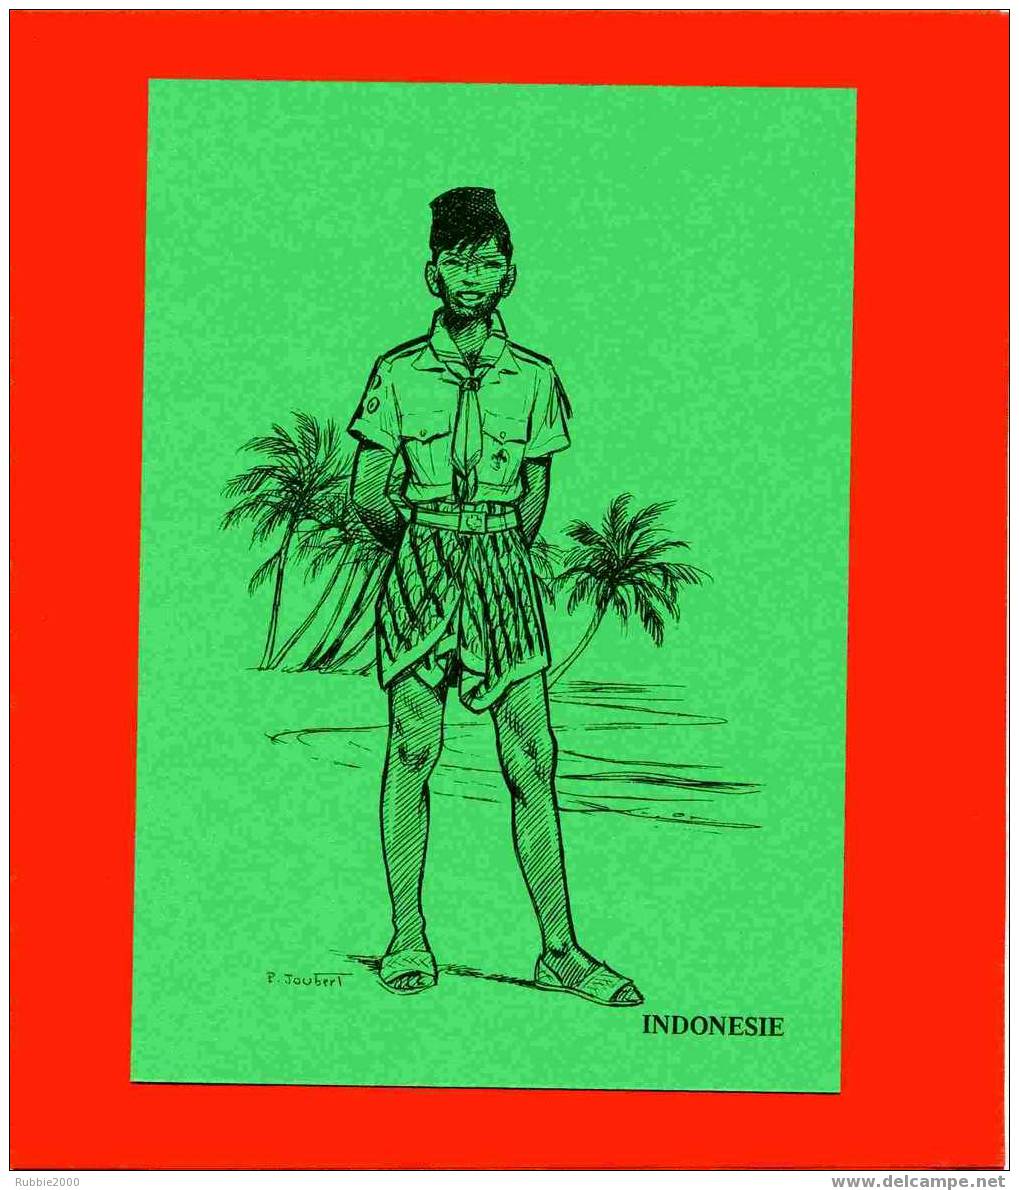 INDONESIE DESSIN ORIGINAL DE JOUBERT 1983 REUNION DES SCOUTS COLLECTIONNEURS A BULLET EN SUISSE SCOUTISME UNIFORME - Scoutismo